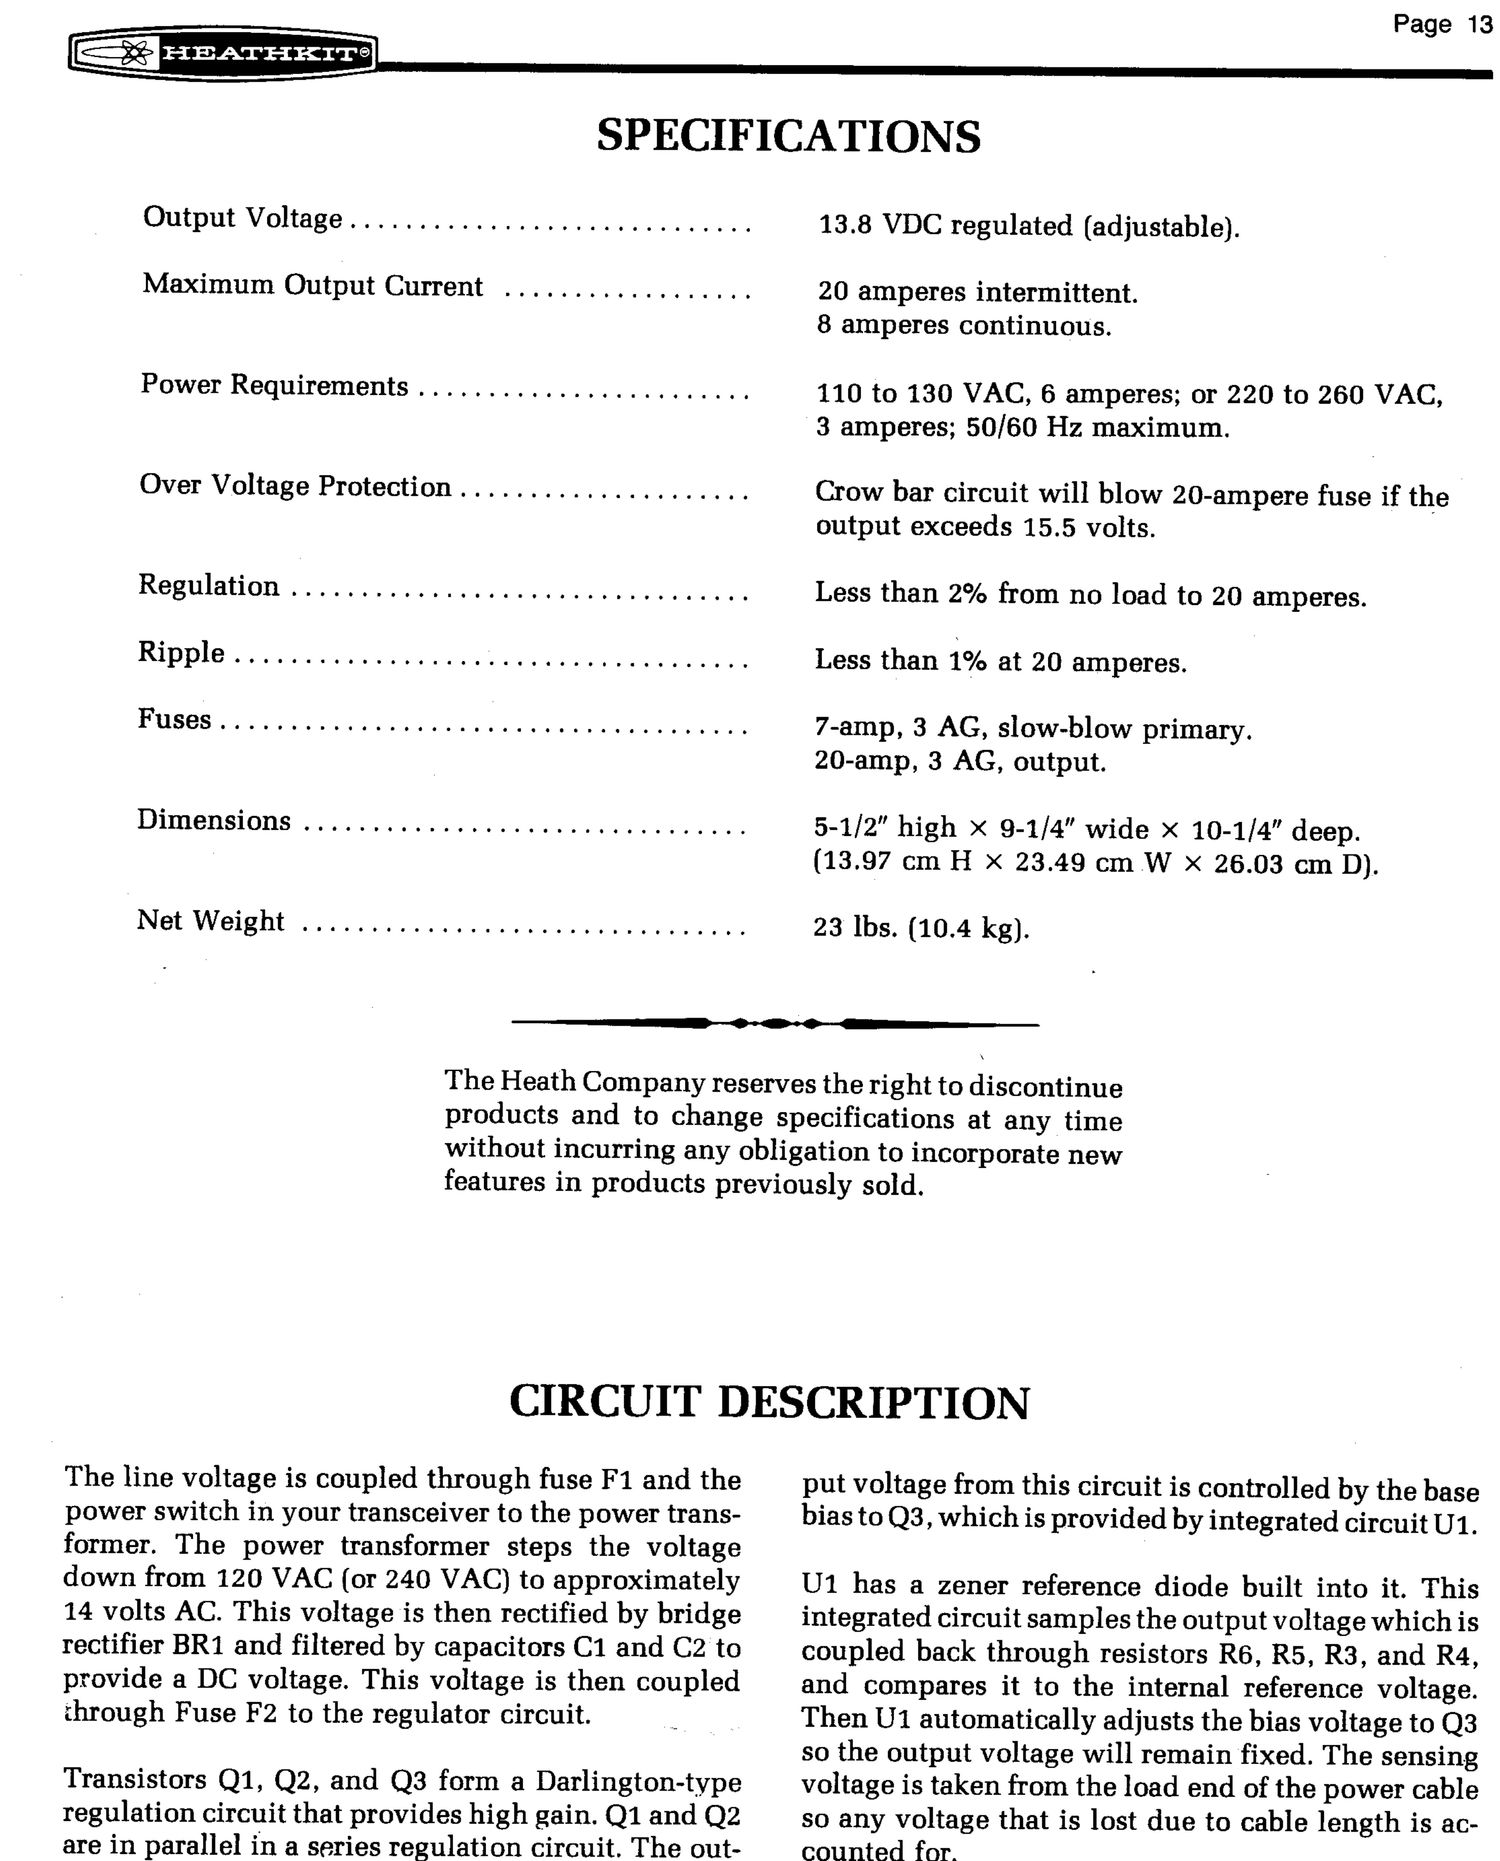 Heathkit HP 1144A Manual